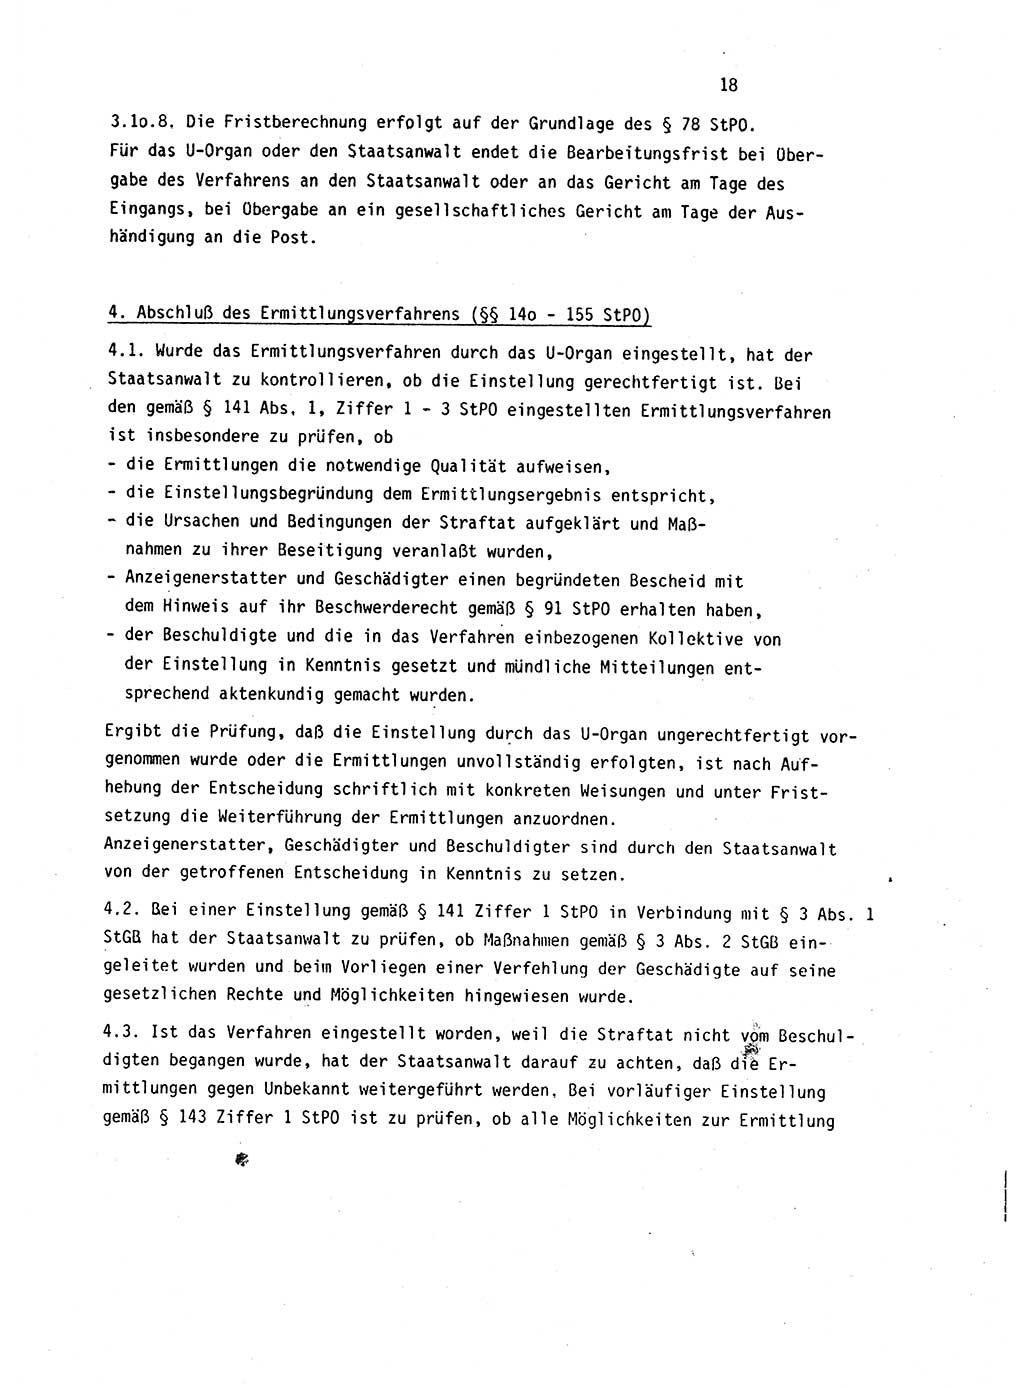 Leitung des Ermittlungsverfahren (EV) durch den Staatsanwalt [Deutsche Demokratische Republik (DDR)] 1985, Seite 18 (Ltg. EV StA DDR 1985, S. 18)